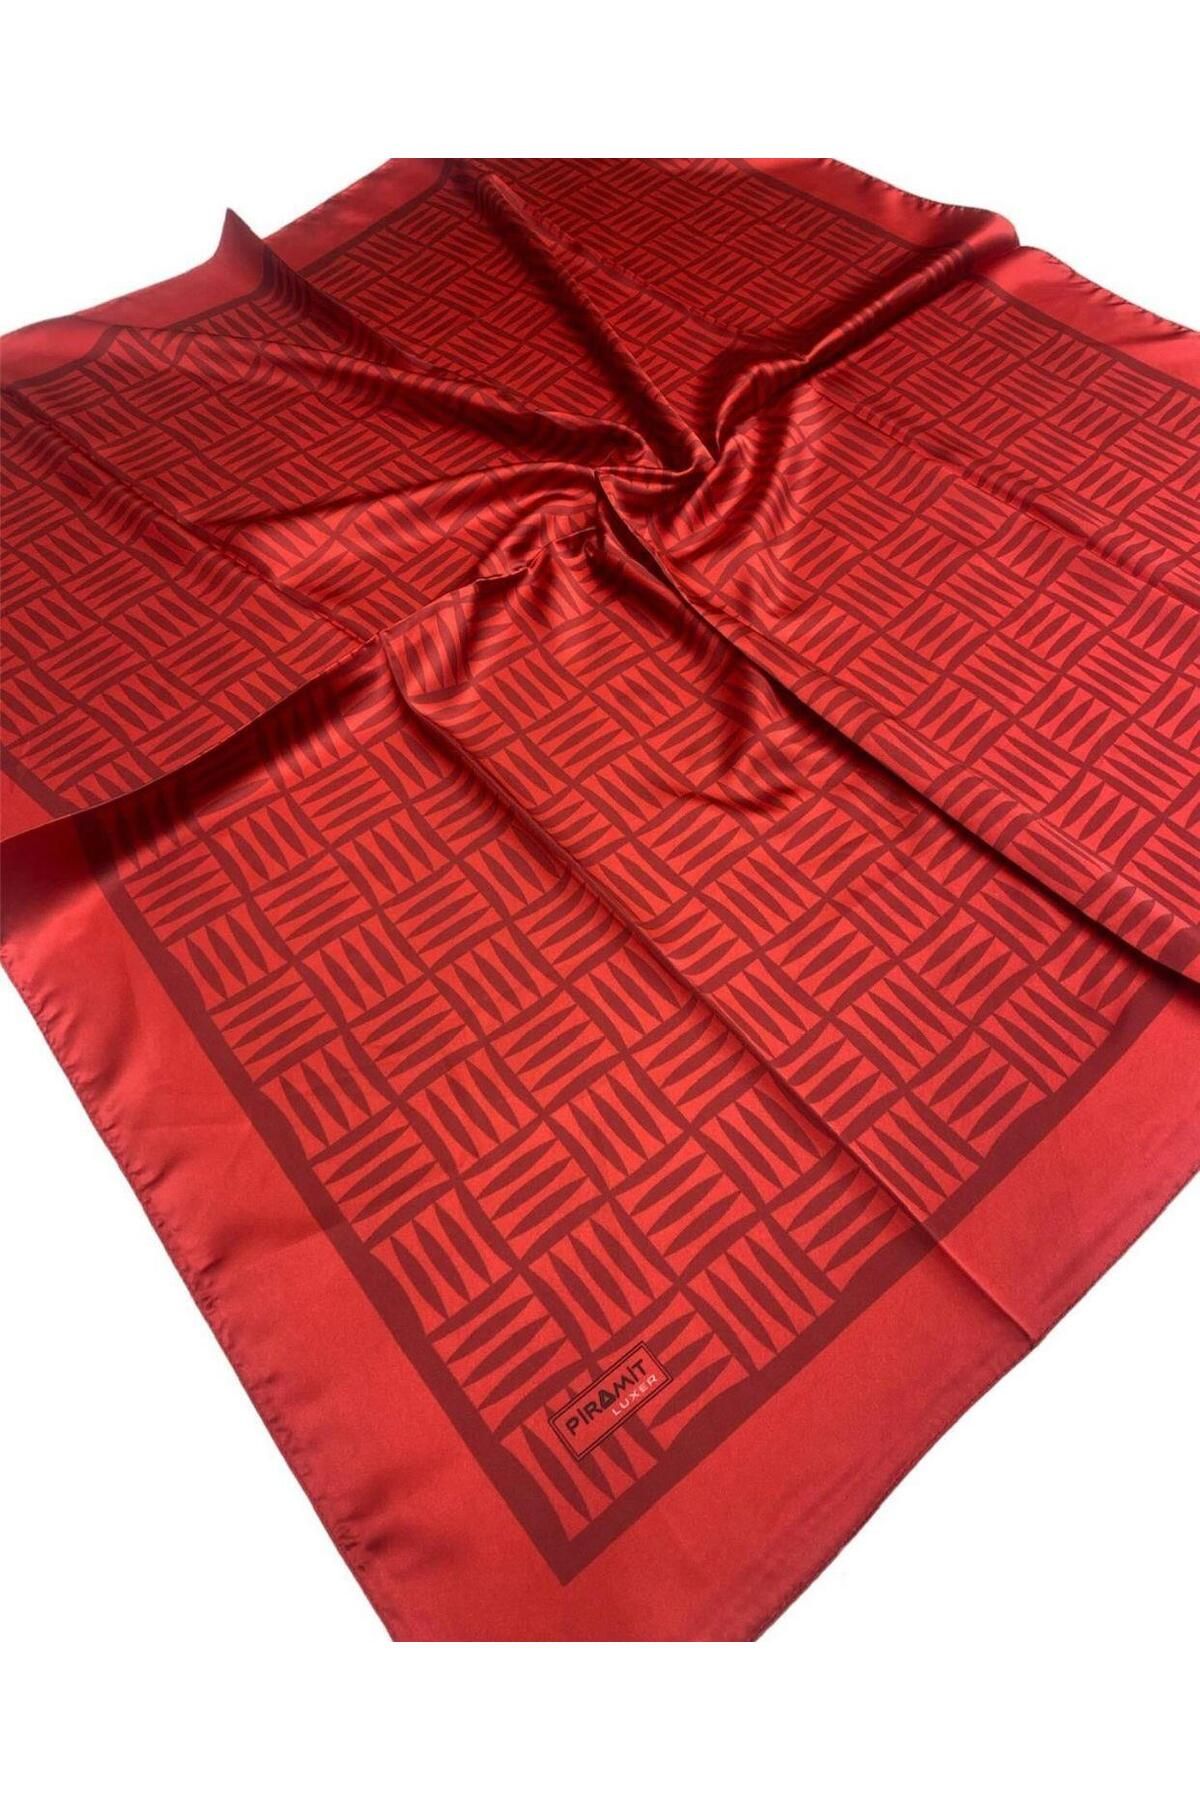 PİRAMİT Baskılı Luxer Eşarp Kırmızı